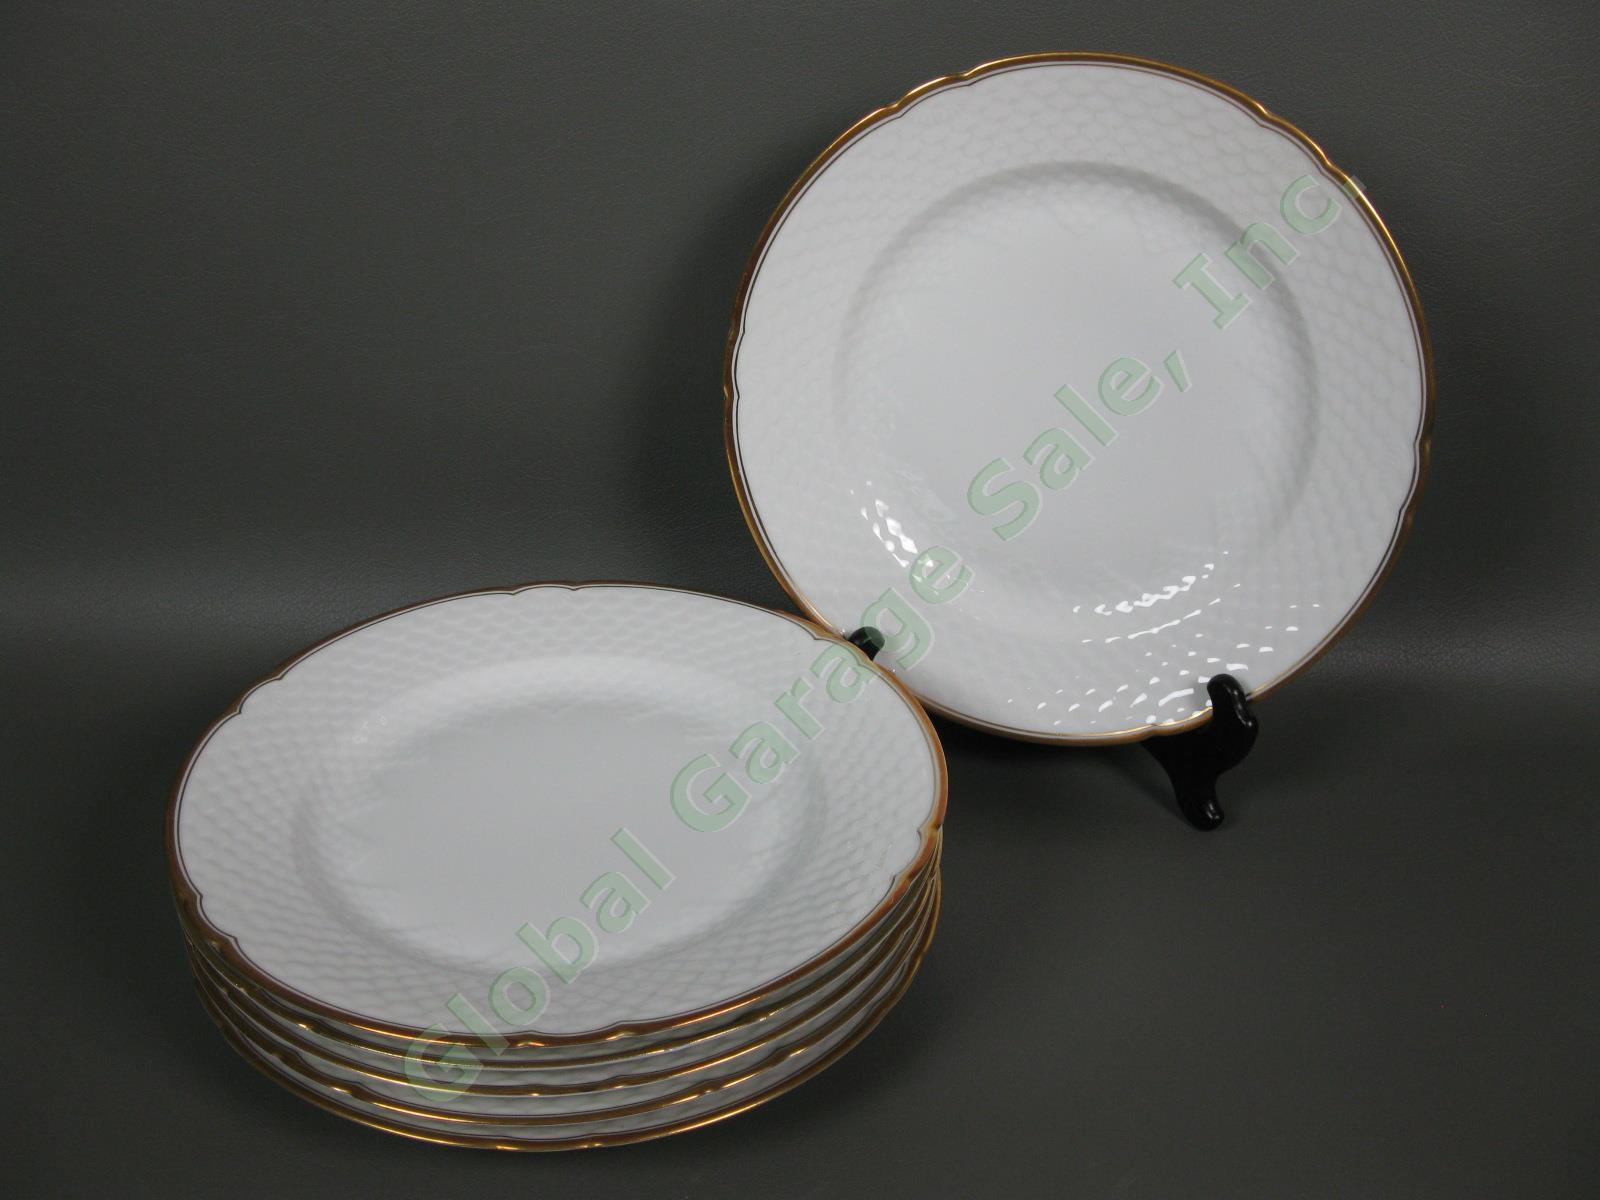 6 B&G Bing & Grondahl Akjaer 9-3/4" Dinner Plate Set White Scalloped Gold Rim NR